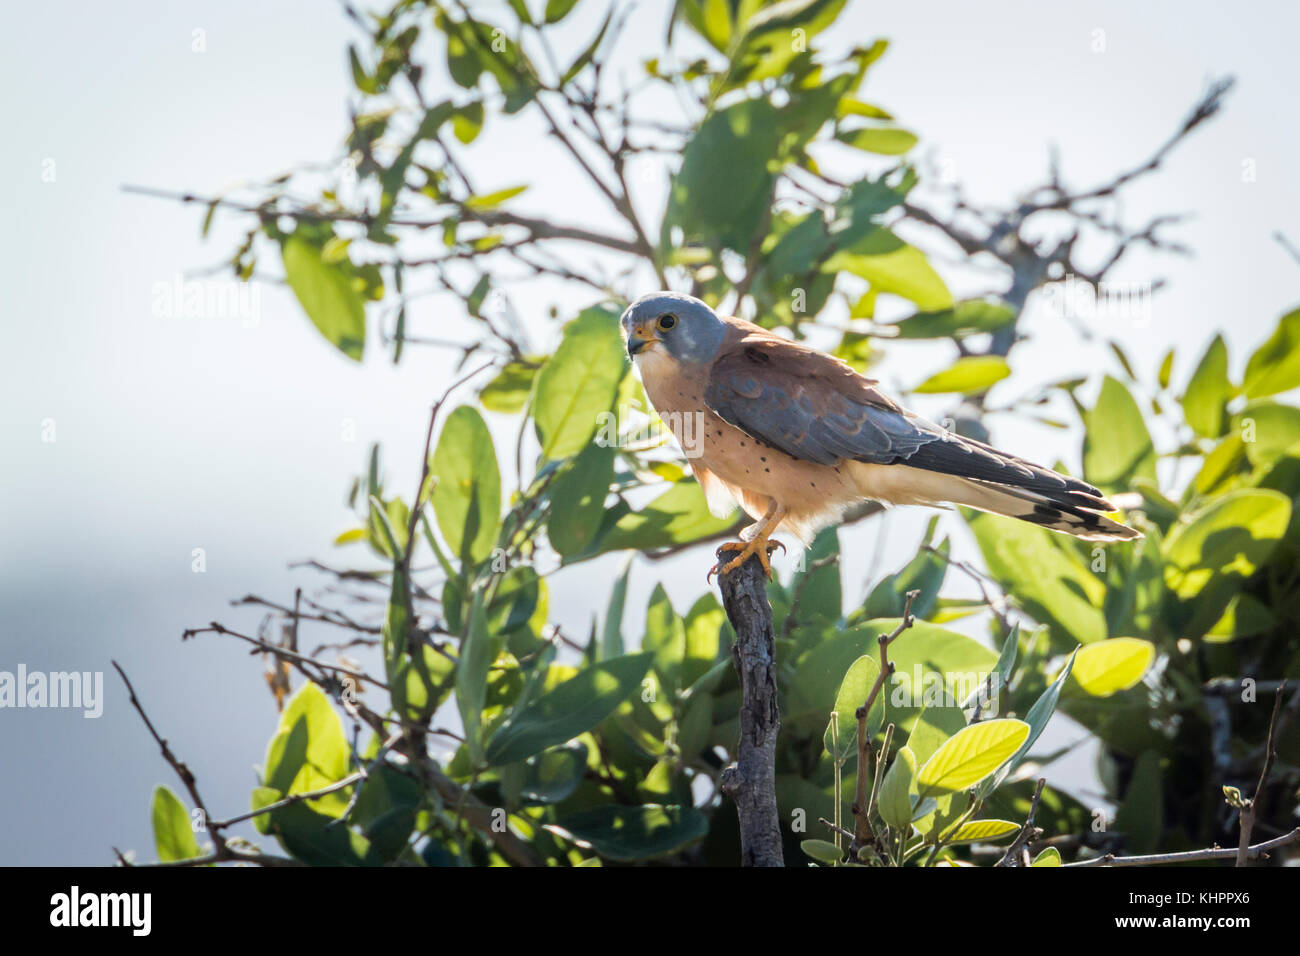 Faucon crécerellette dans Kruger National Park, Afrique du Sud ; espèce Falco naumanni famille des falconidae Banque D'Images